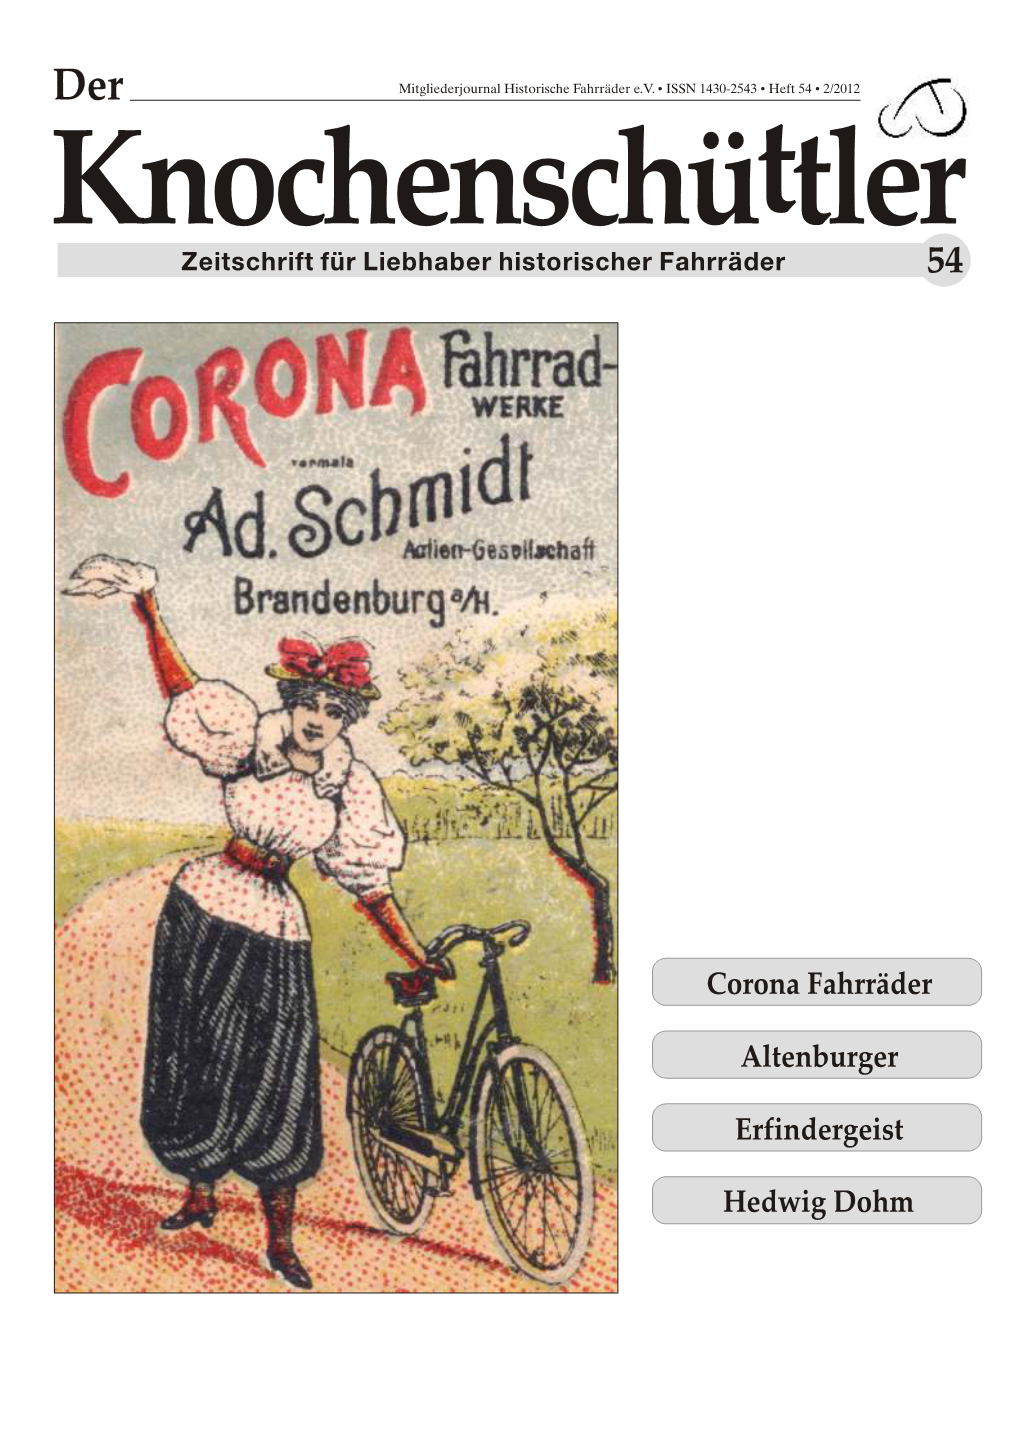 Hedwig Dohm Erfindergeist Altenburger Corona Fahrräder